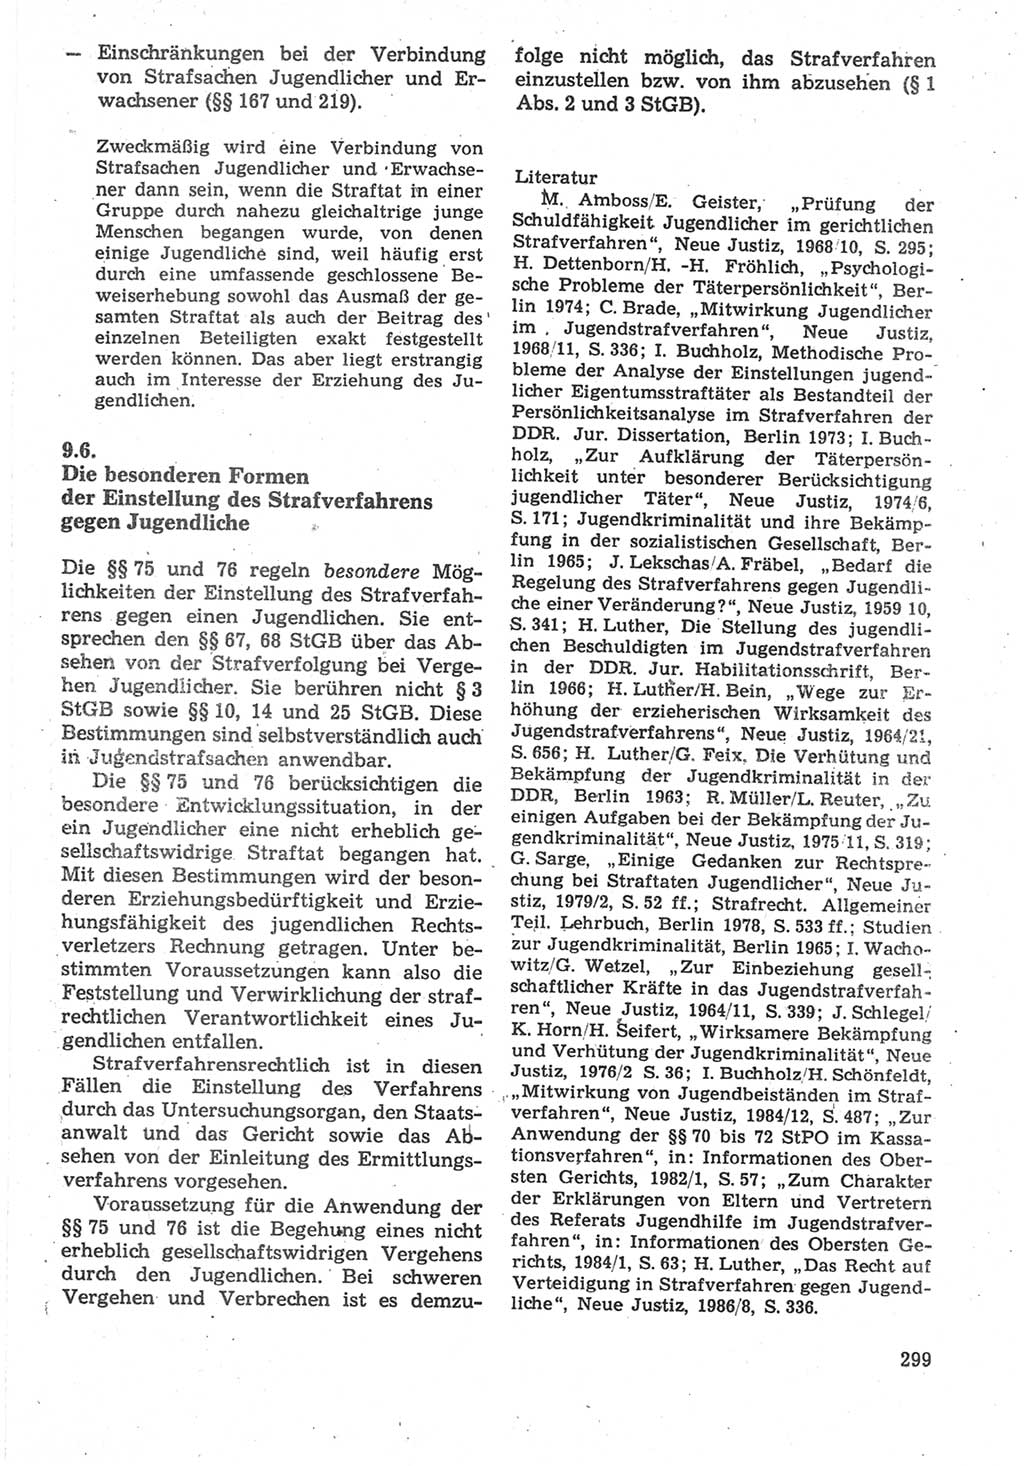 Strafverfahrensrecht [Deutsche Demokratische Republik (DDR)], Lehrbuch 1987, Seite 299 (Strafverf.-R. DDR Lb. 1987, S. 299)